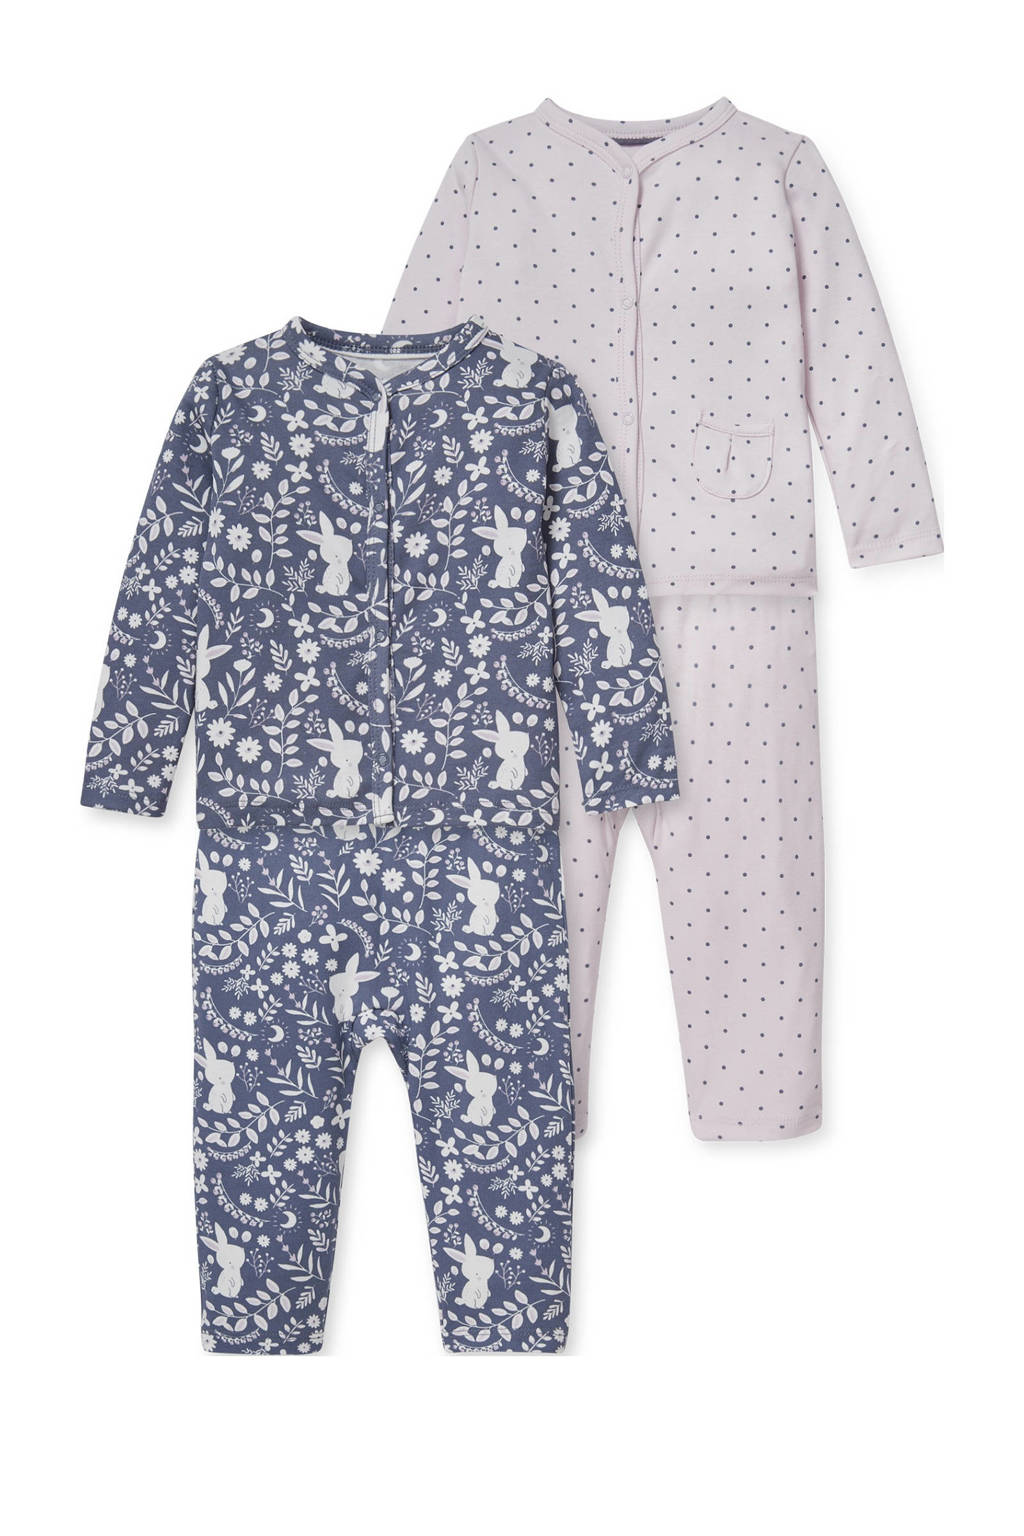 C&A pyjama - set van 2 blauw/paars, Blauw/paars